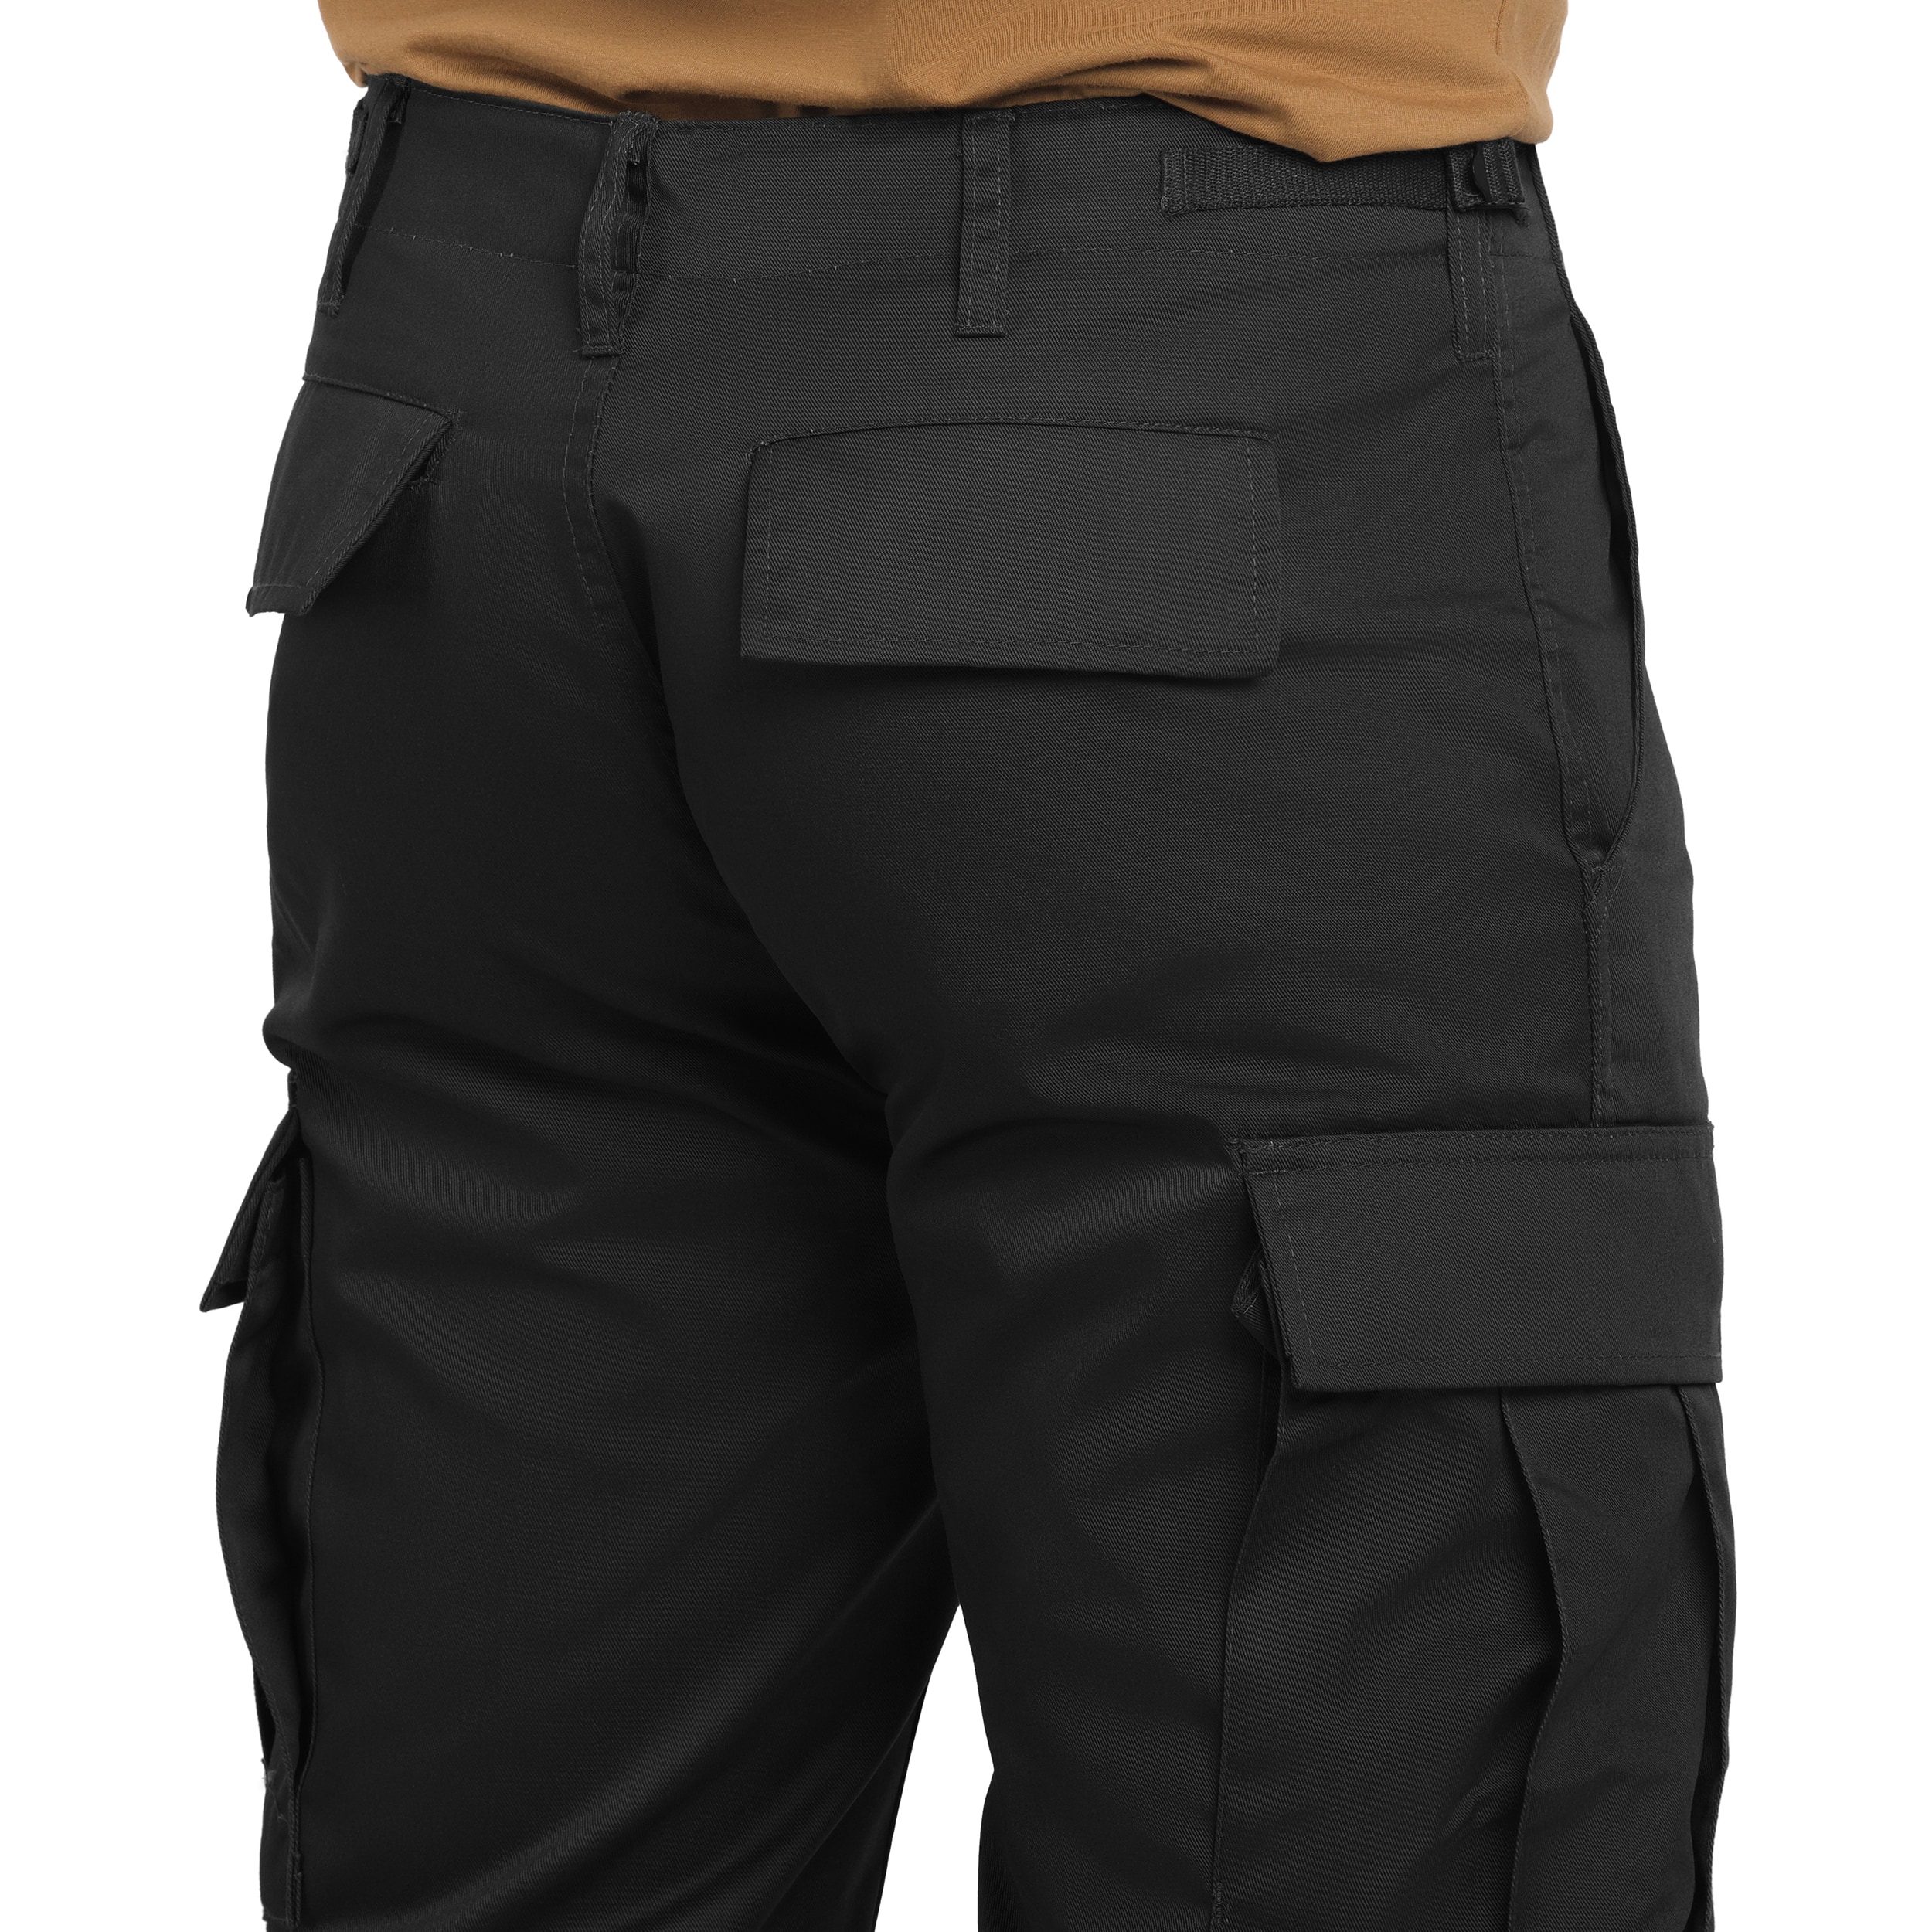 Spodnie wojskowe Mil-Tec US Ranger BDU Straight Cut - Black